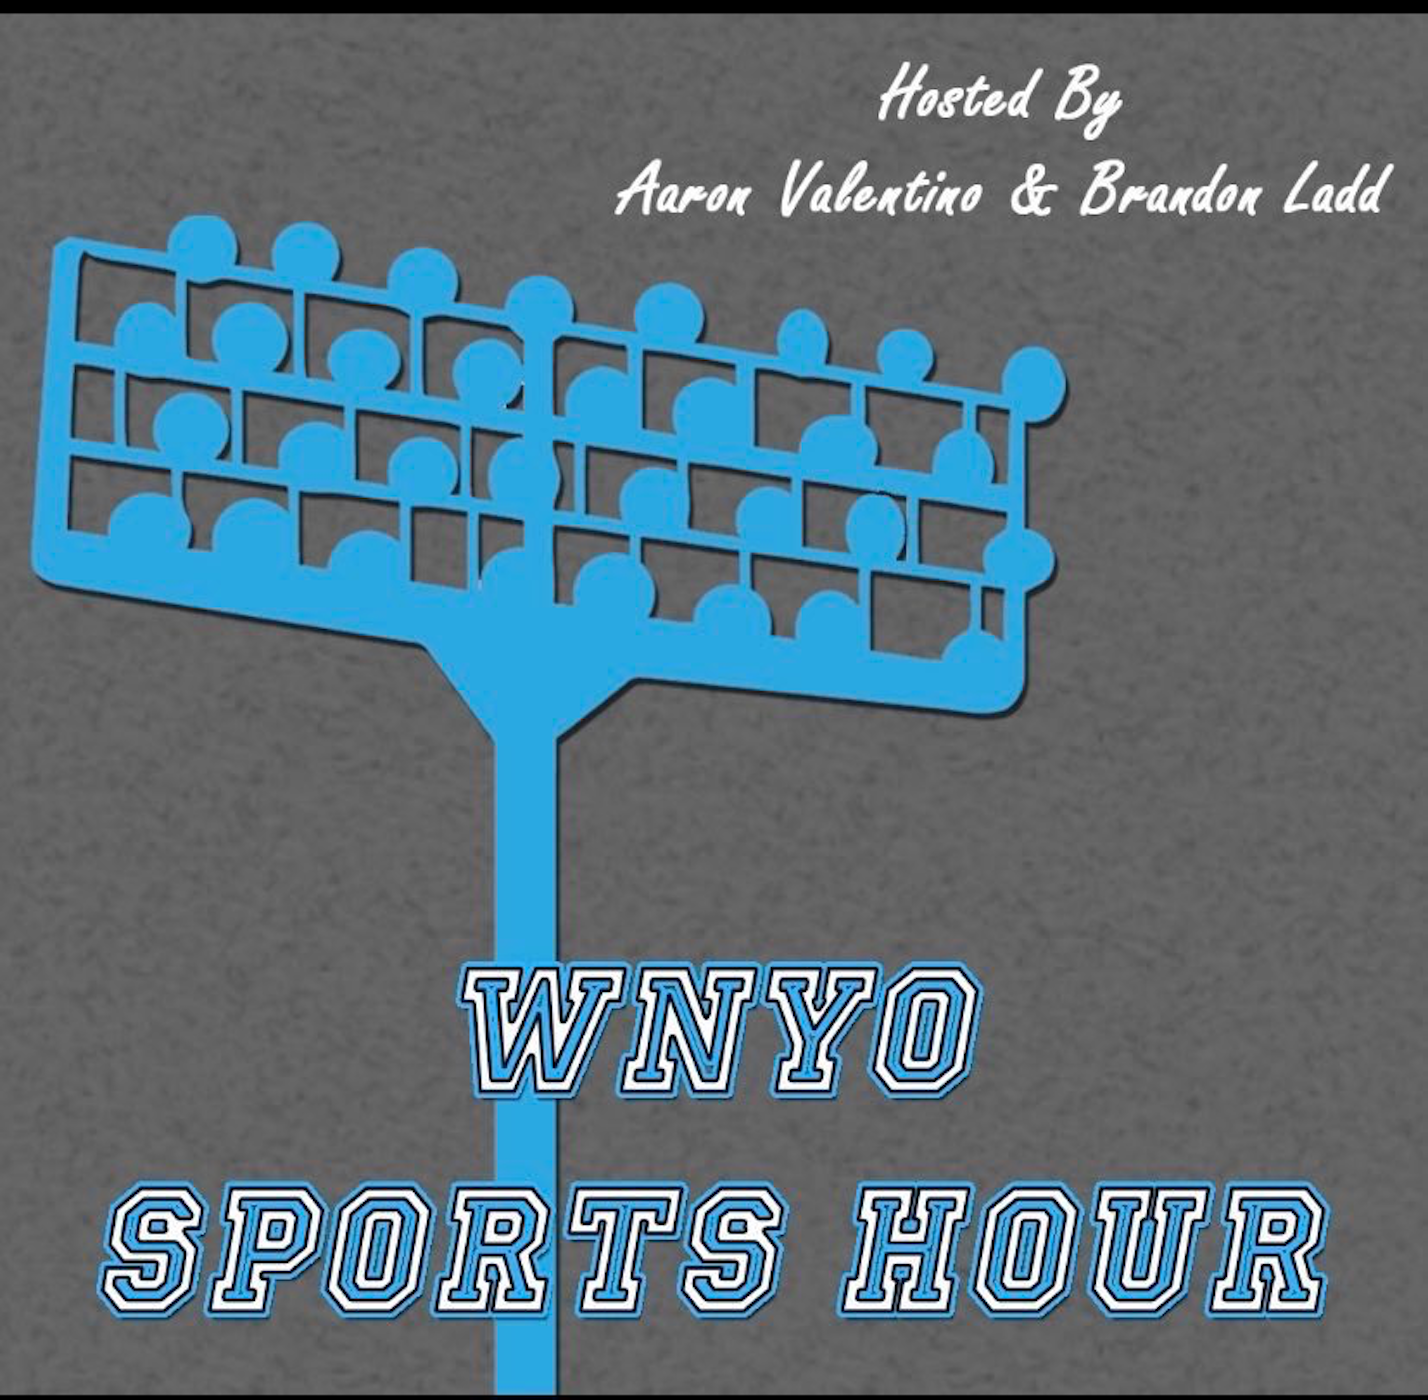 WNYO Sports Hour